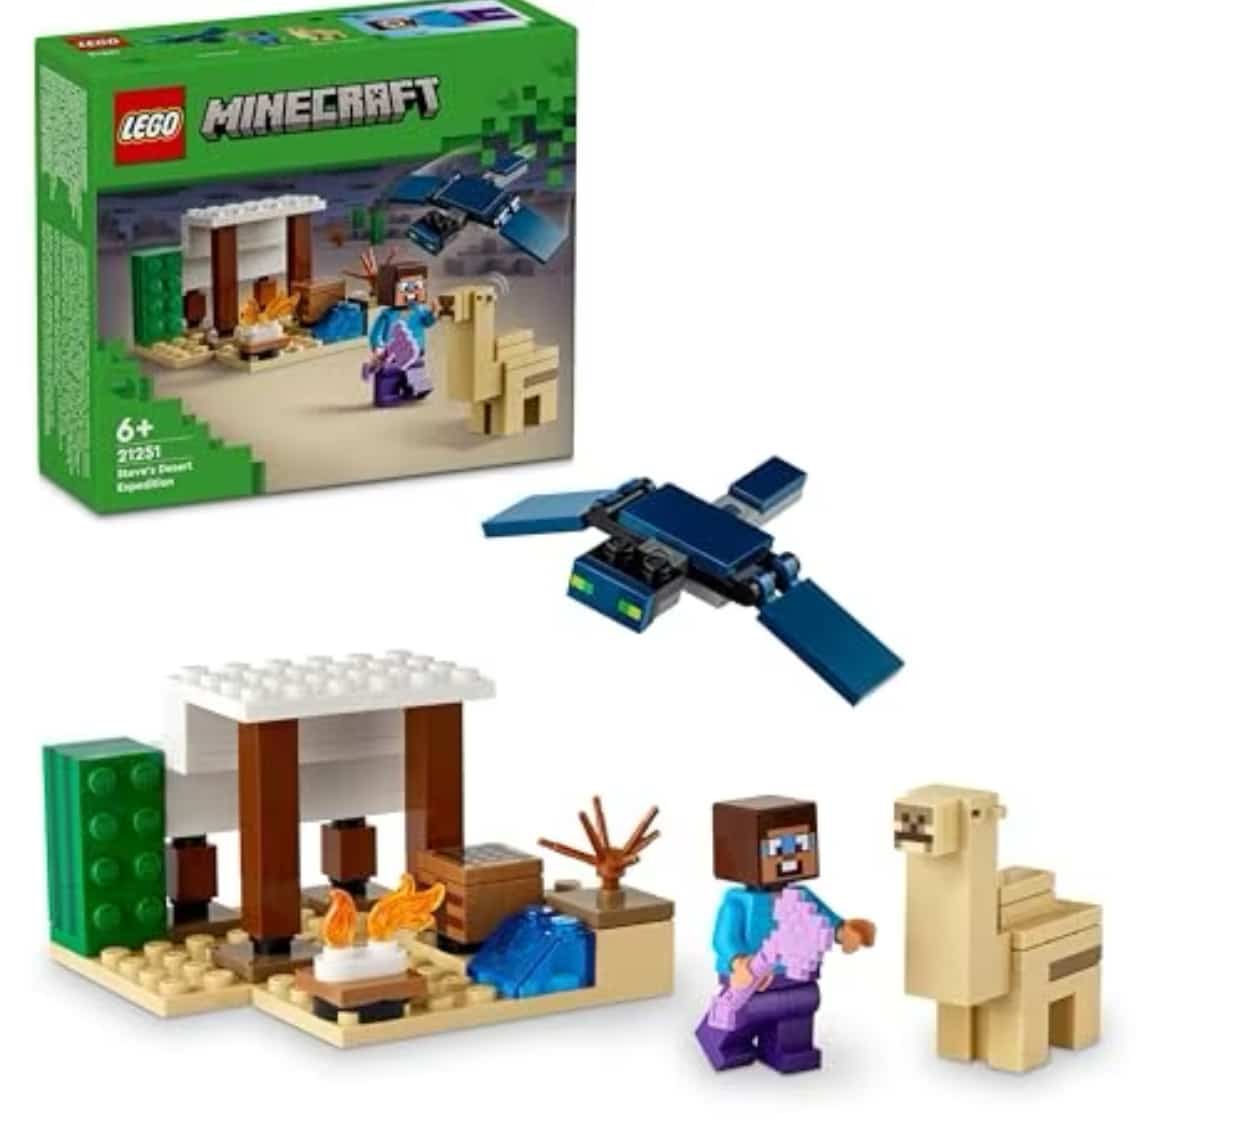 LEGO Minecraft Steves Wüstenexpedition, Set zum Videospiel für 6,79€ (statt 9,99€)